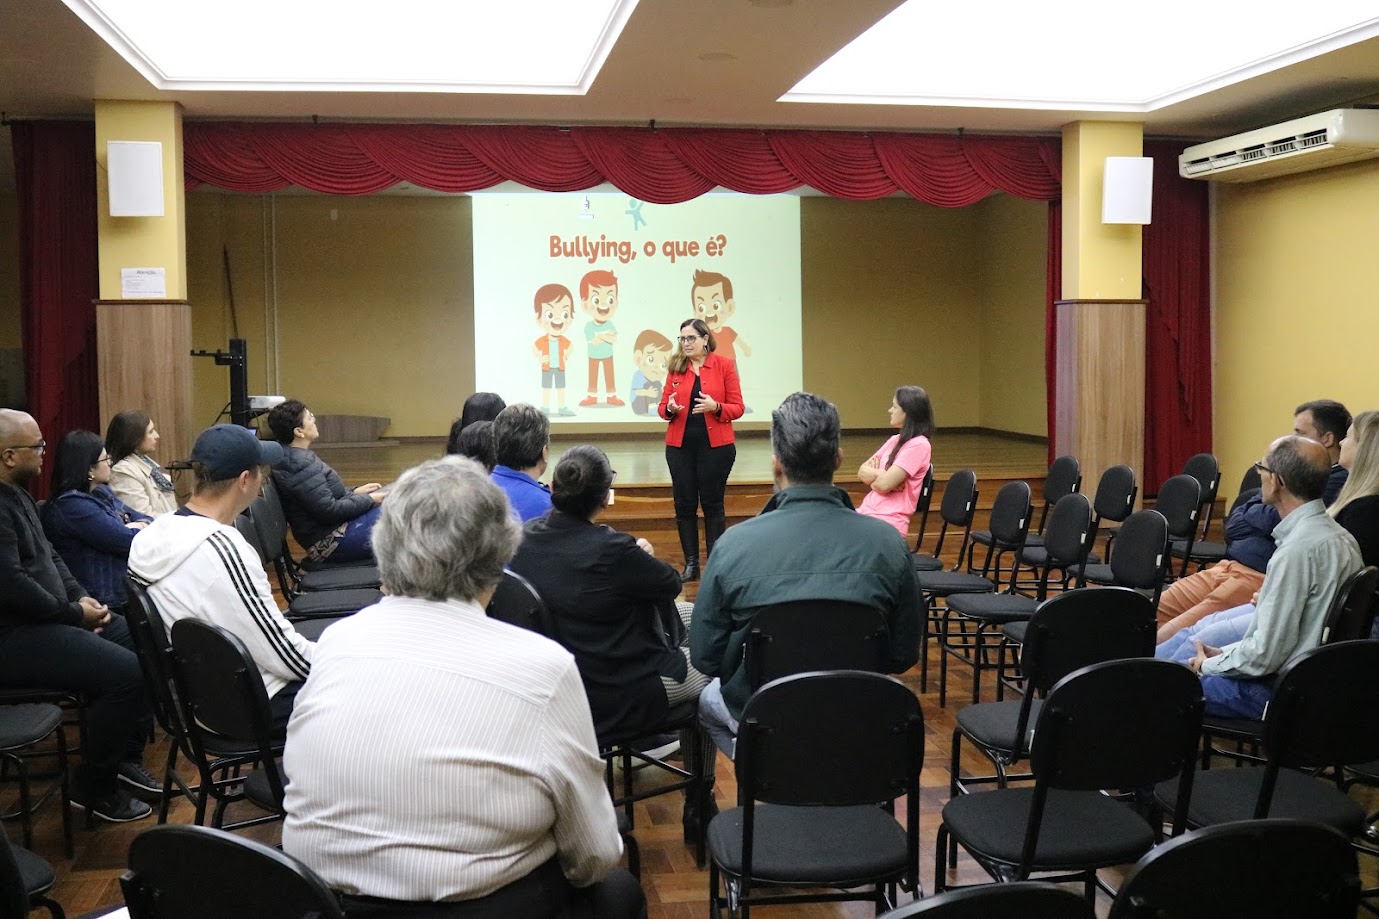 Escola São Francisco de Assis promove diálogo sobre nova lei antibullying com famílias